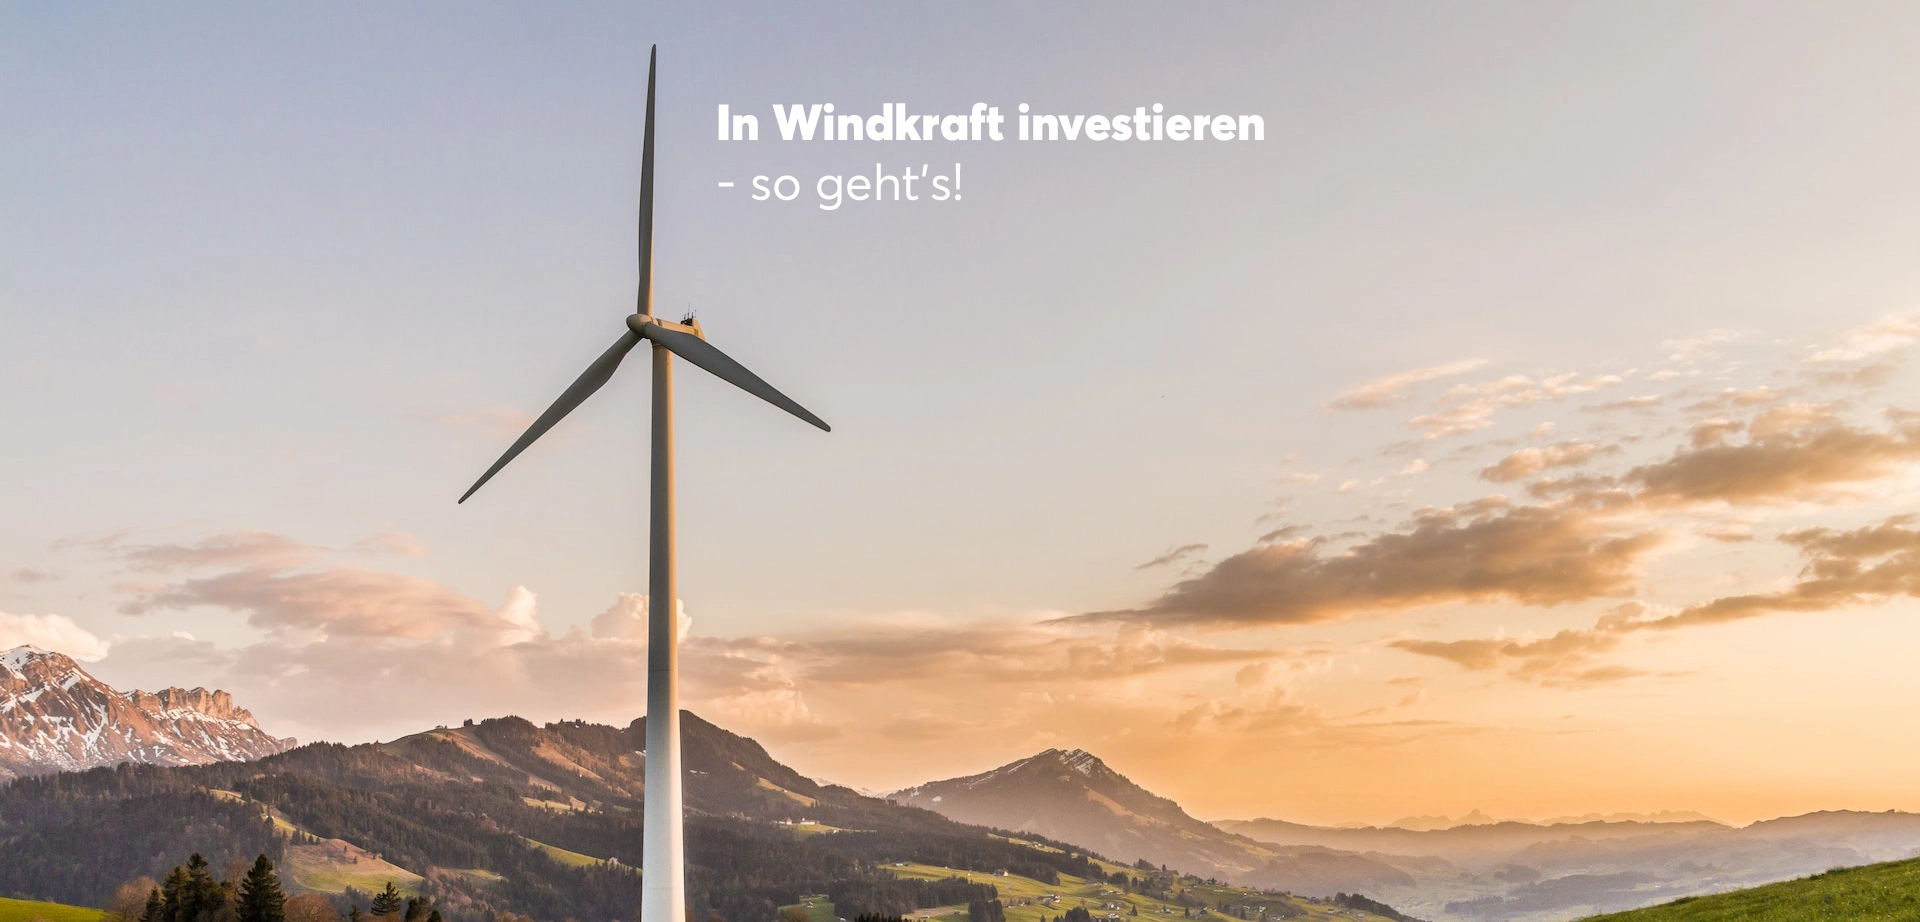 In Windkraft investieren